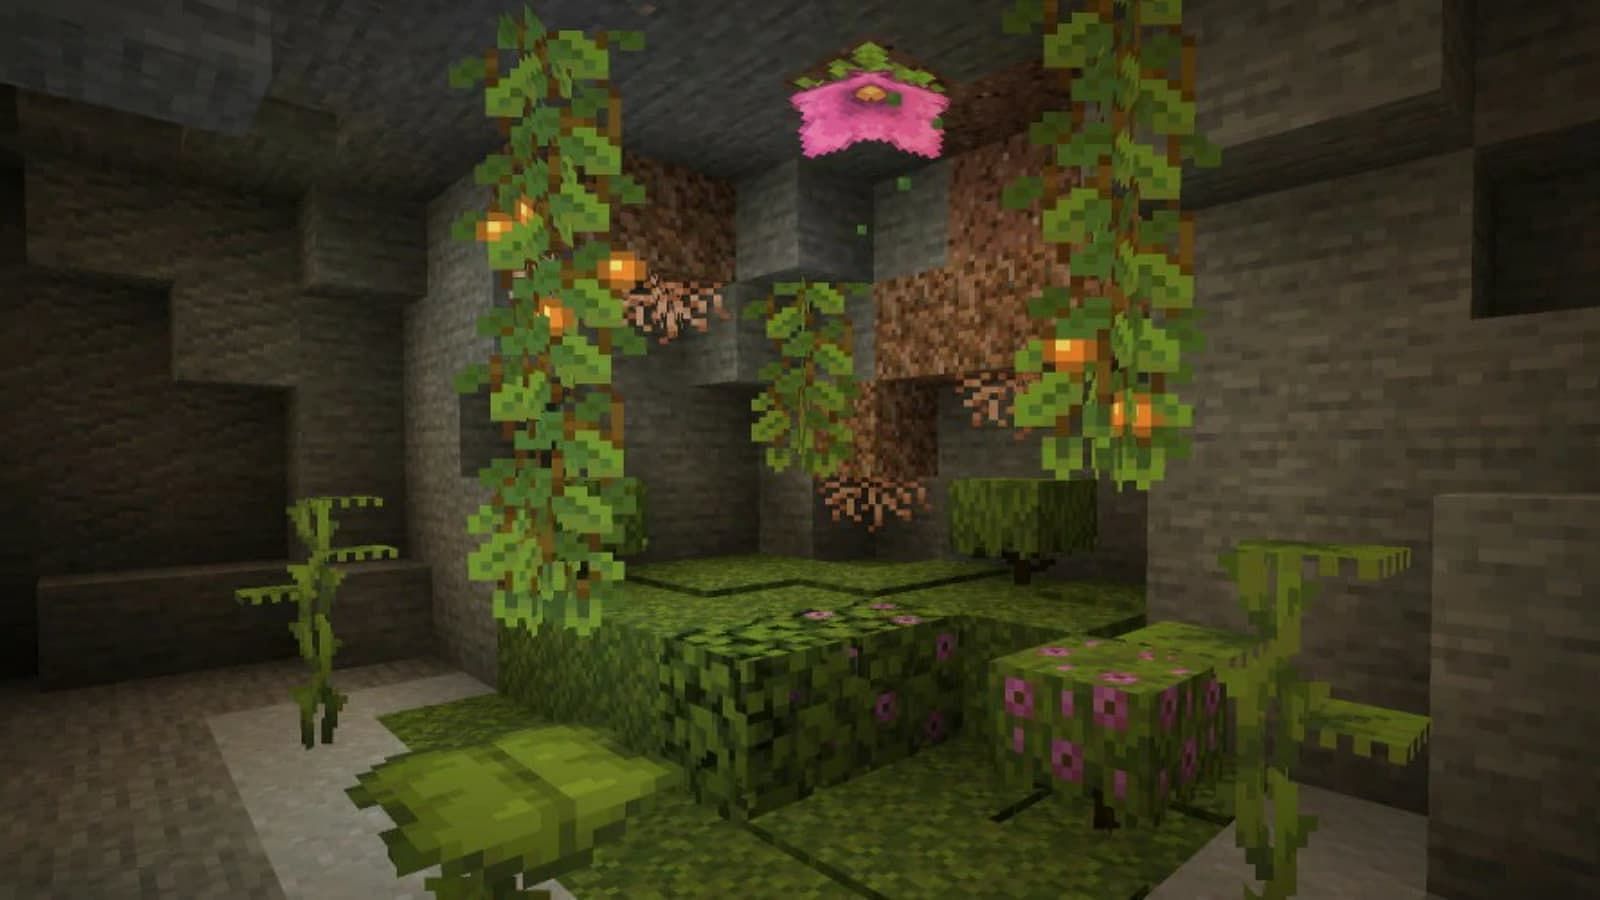 Piccole foglie a goccia sono comunemente visibili nelle grotte lussureggianti (Immagine tramite Minecraft)